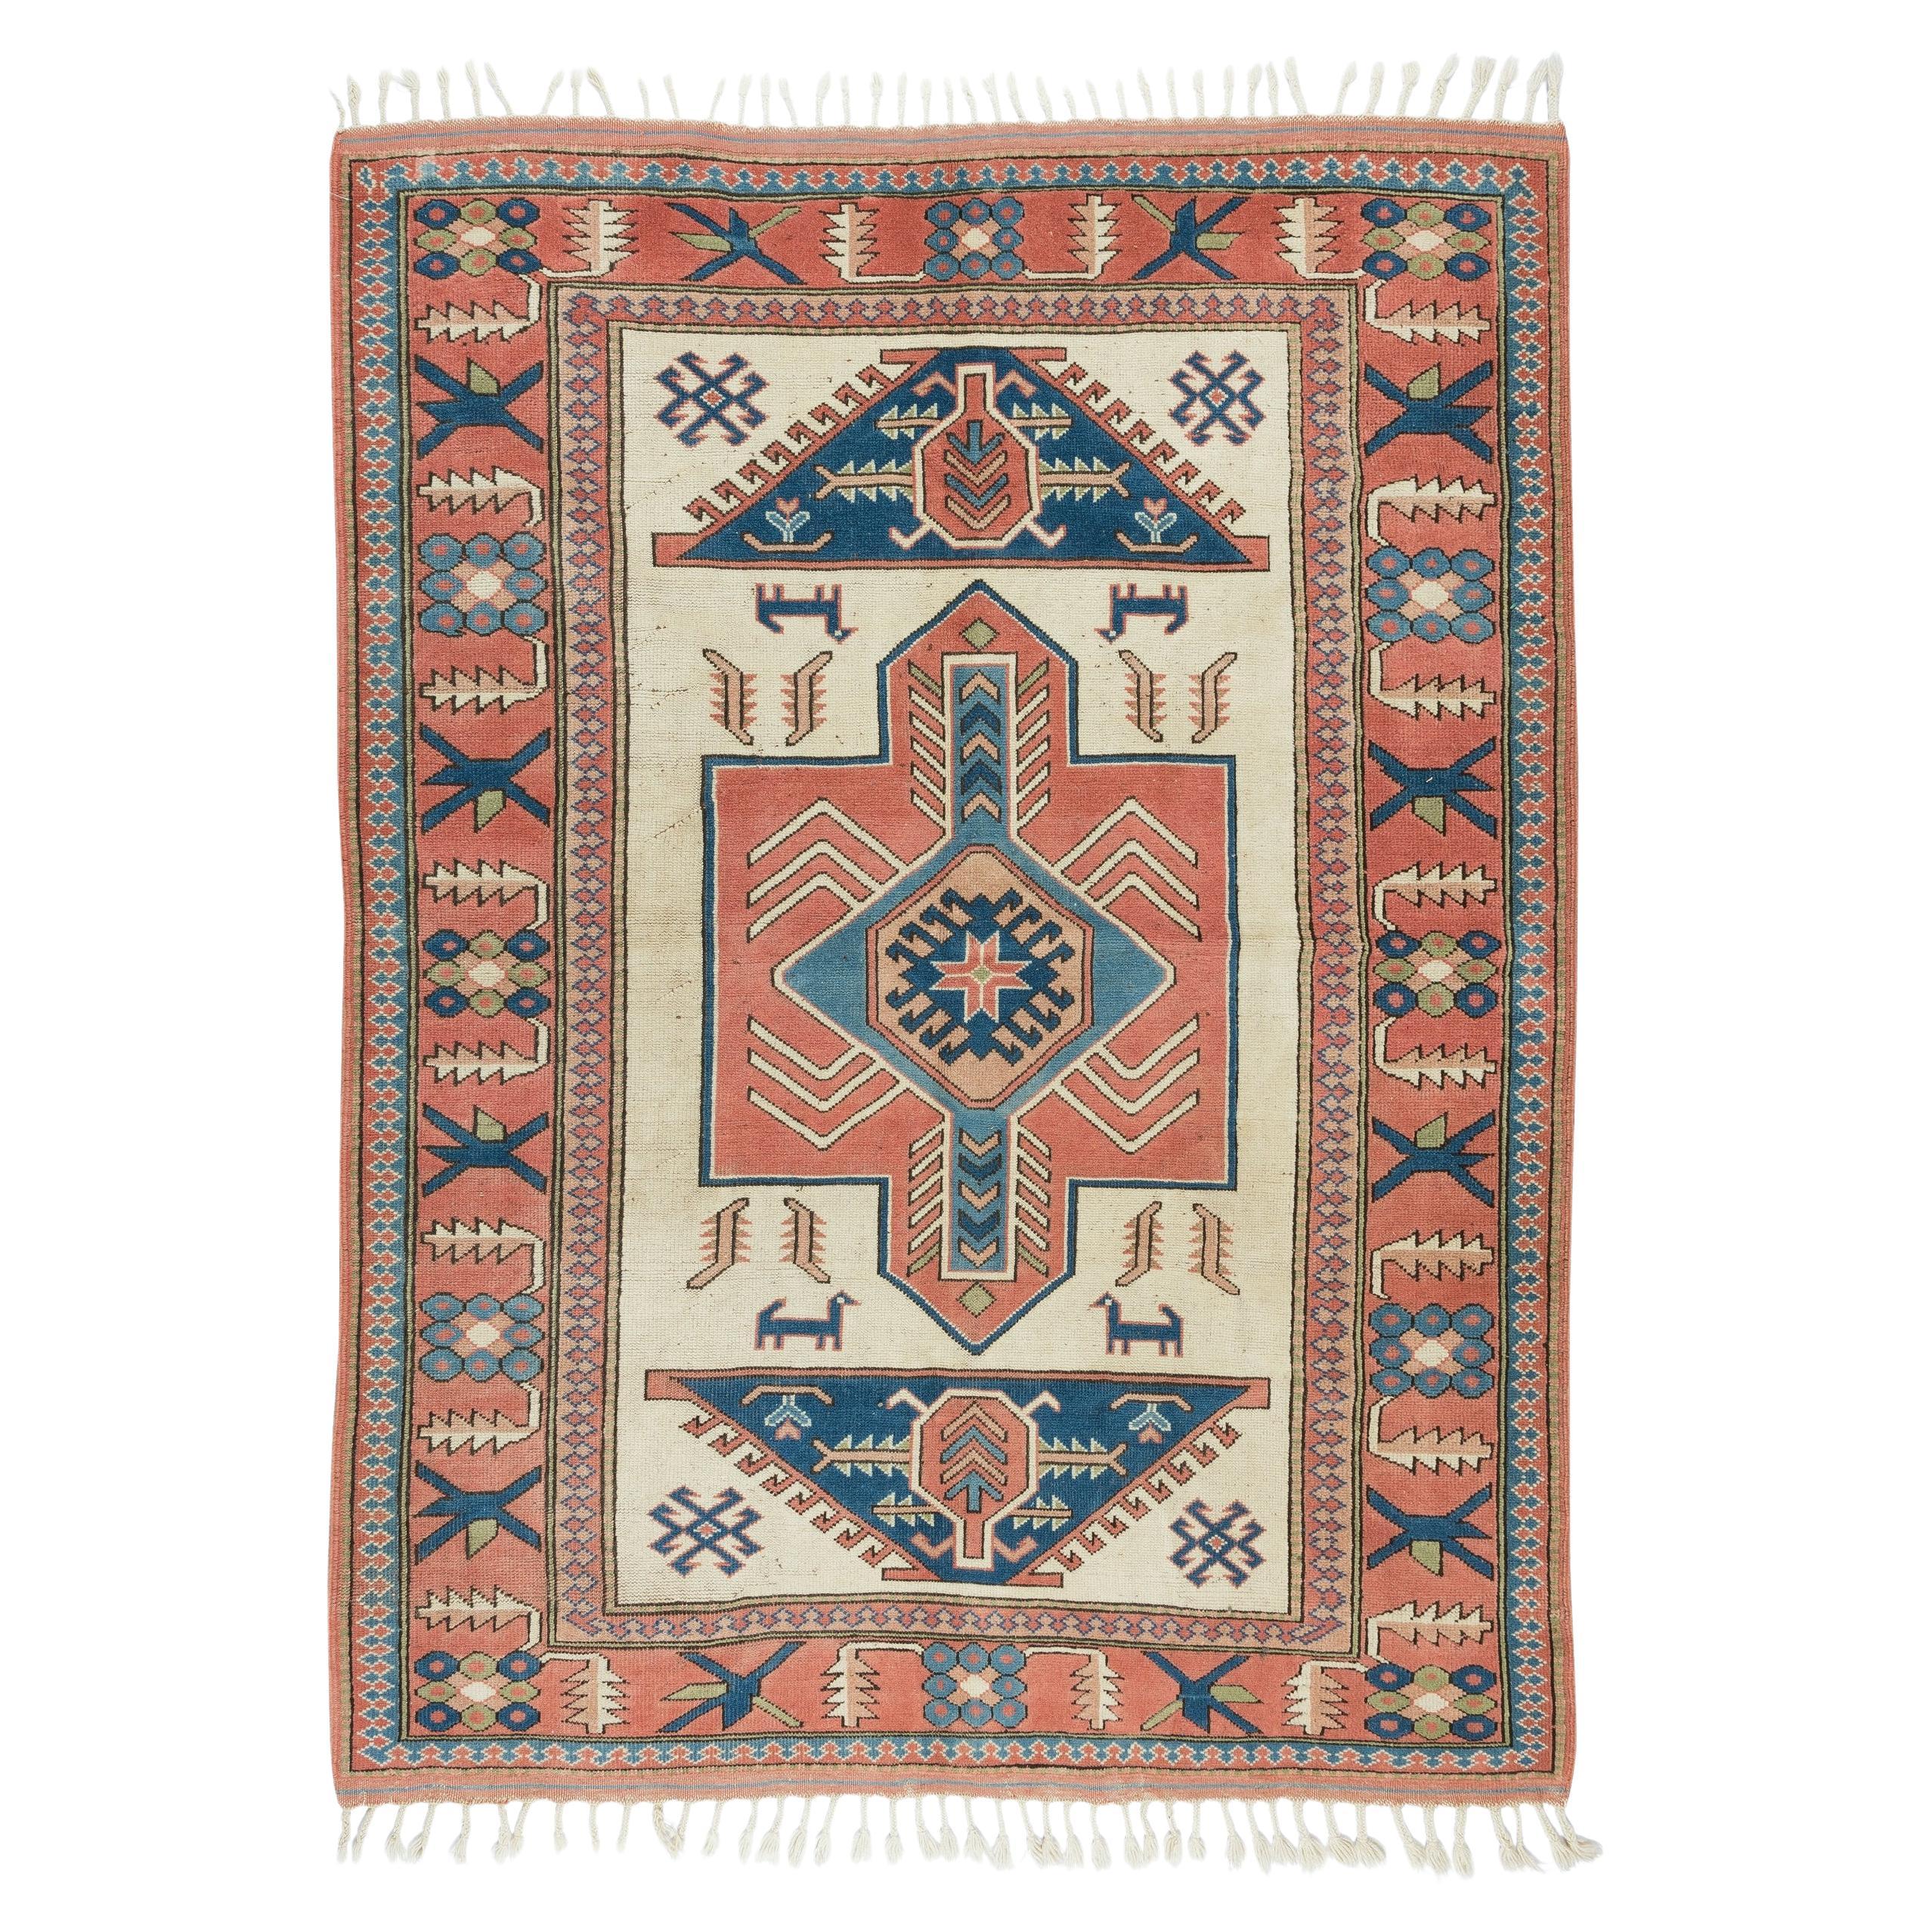 6x8 Ft Handgeknüpfter zentral- anatolischer Vintage-Teppich für Wohnzimmerdekor